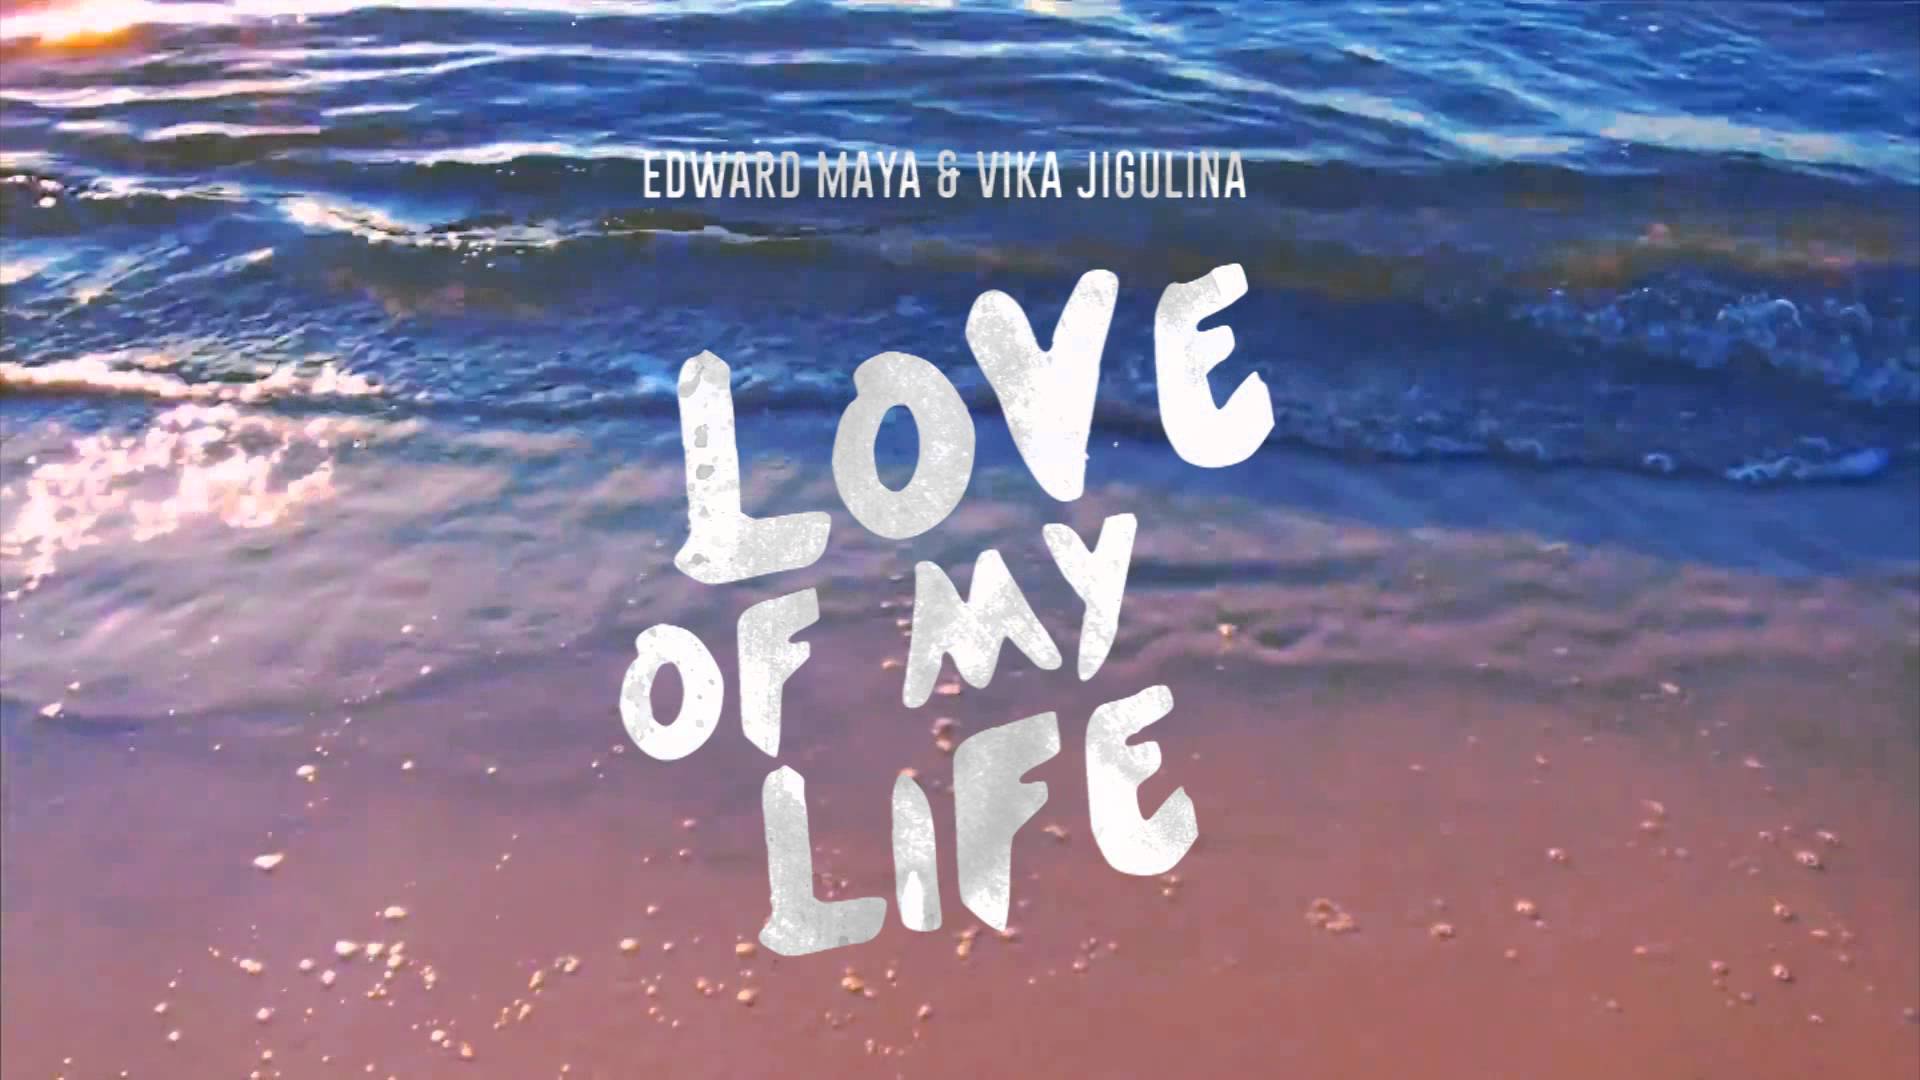 Edward Maya & Vika Jigulina - Love Of My Life